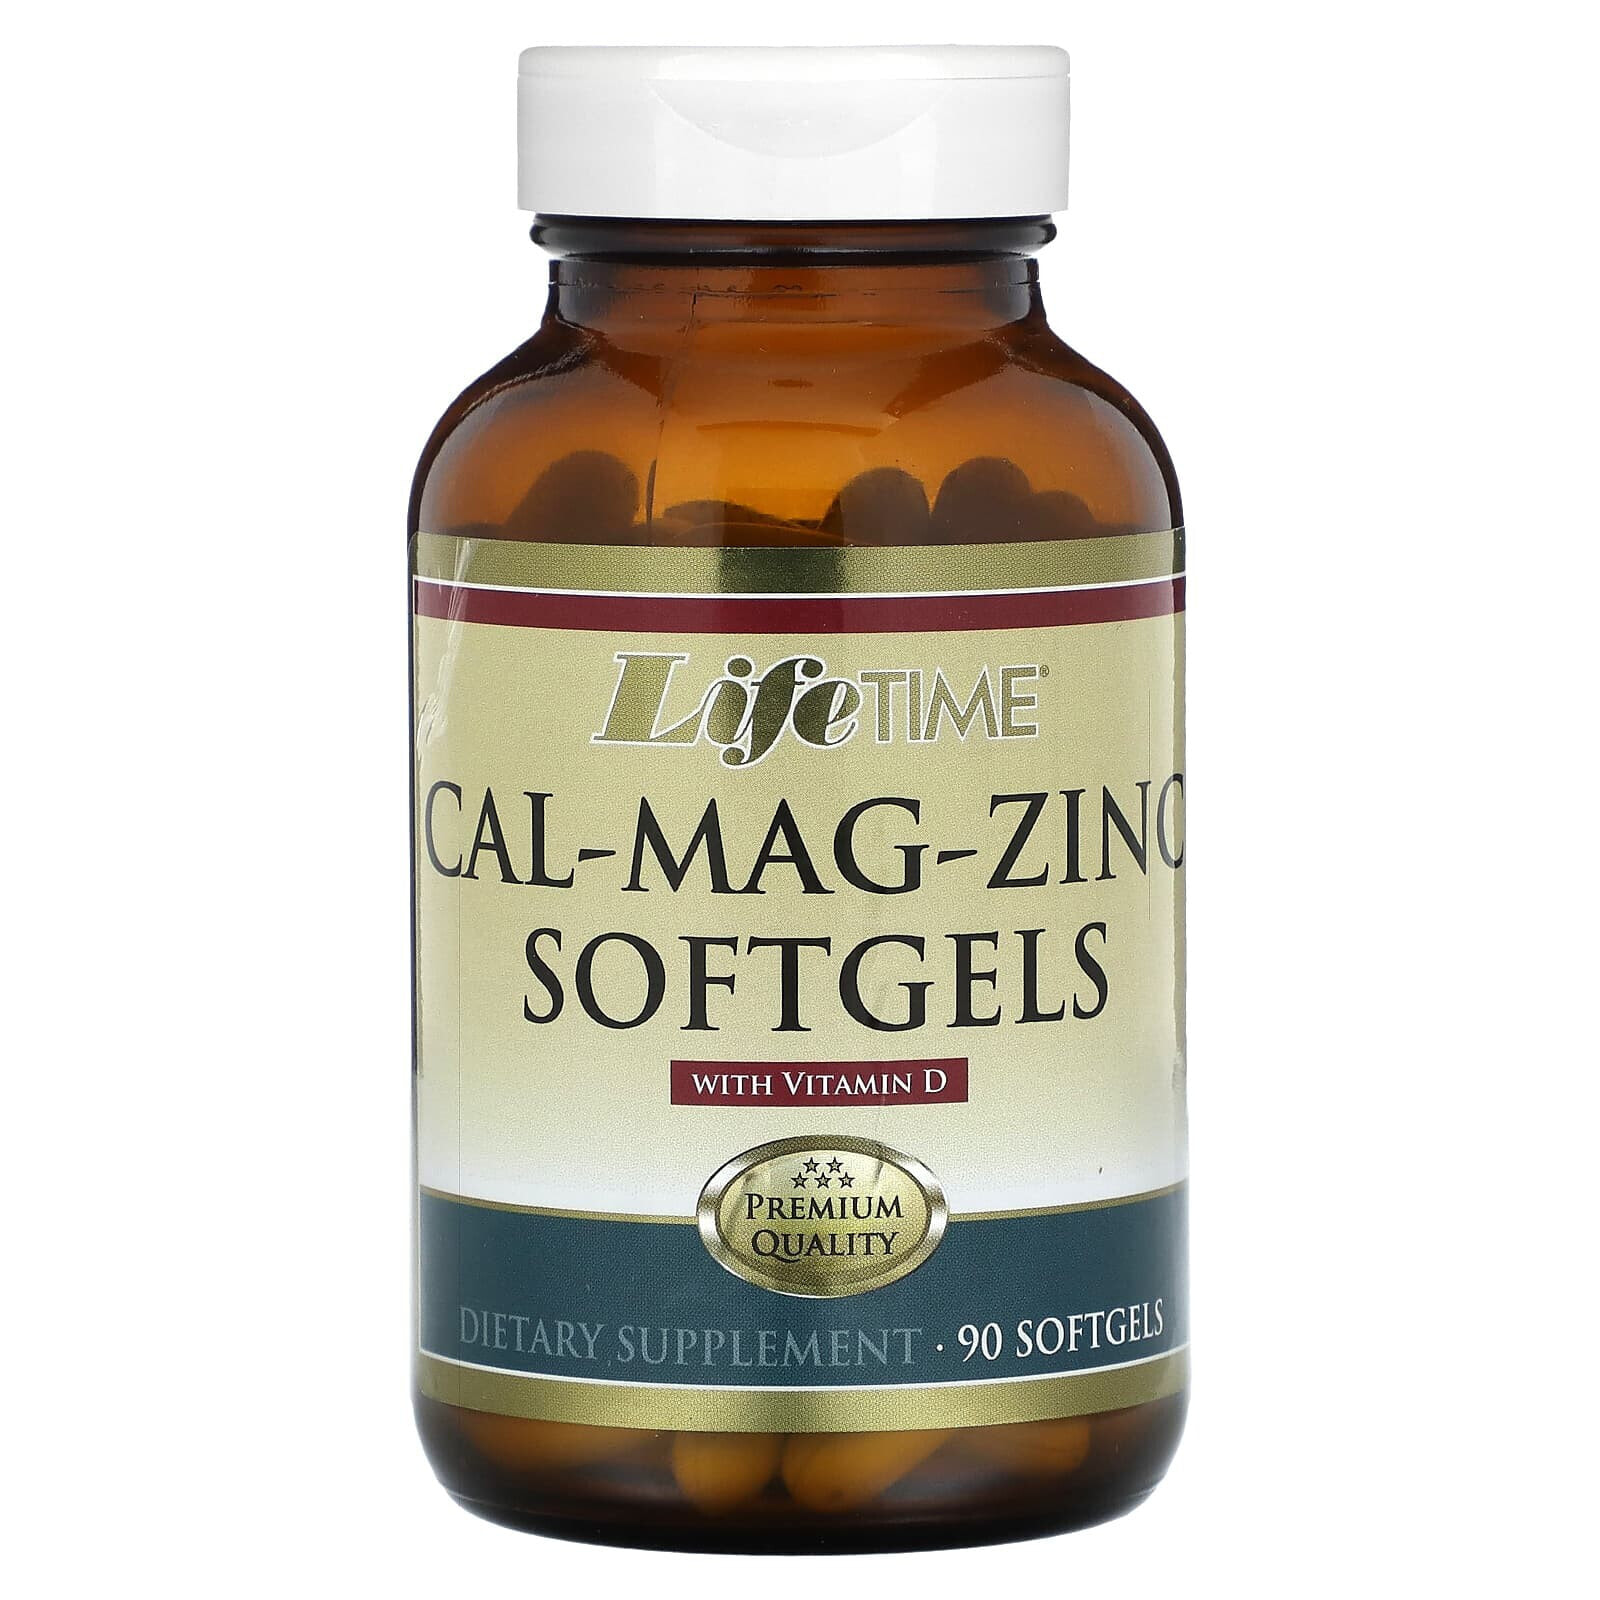 ЛайфТайм Витаминс, Cal-Mag-Zinc With Vitamin D, 90 Softgels (Товар снят с продажи) 